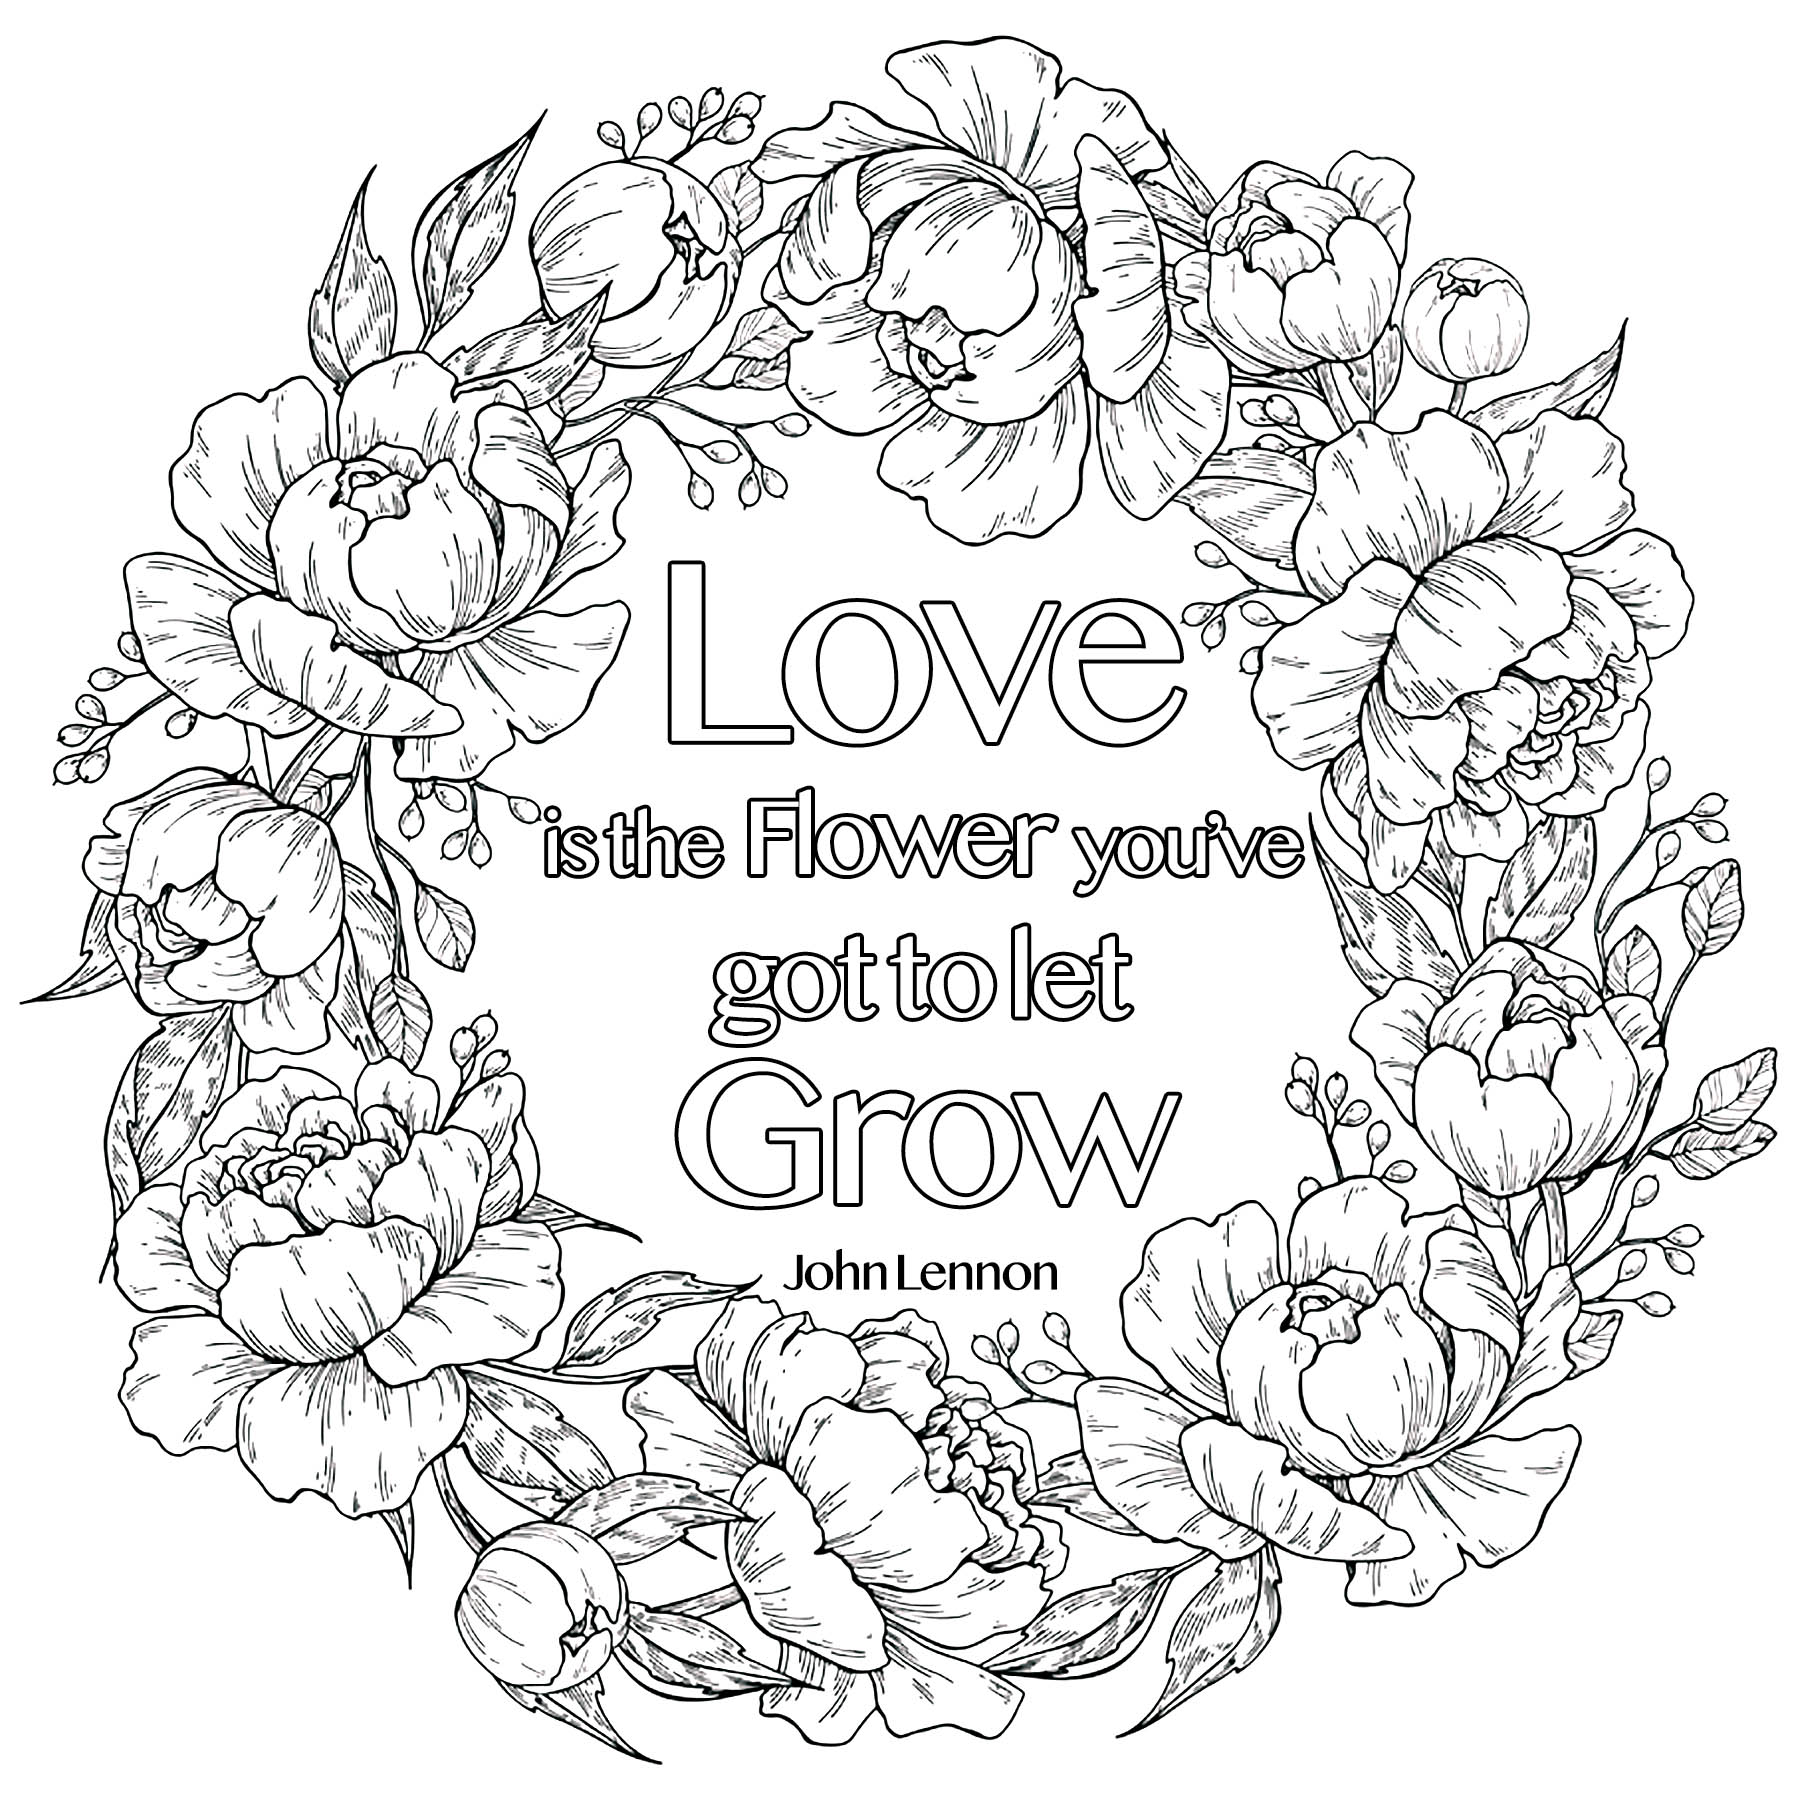 Love is the Flower you've got to let grow, John Lennon (in einer Blumenkrone)